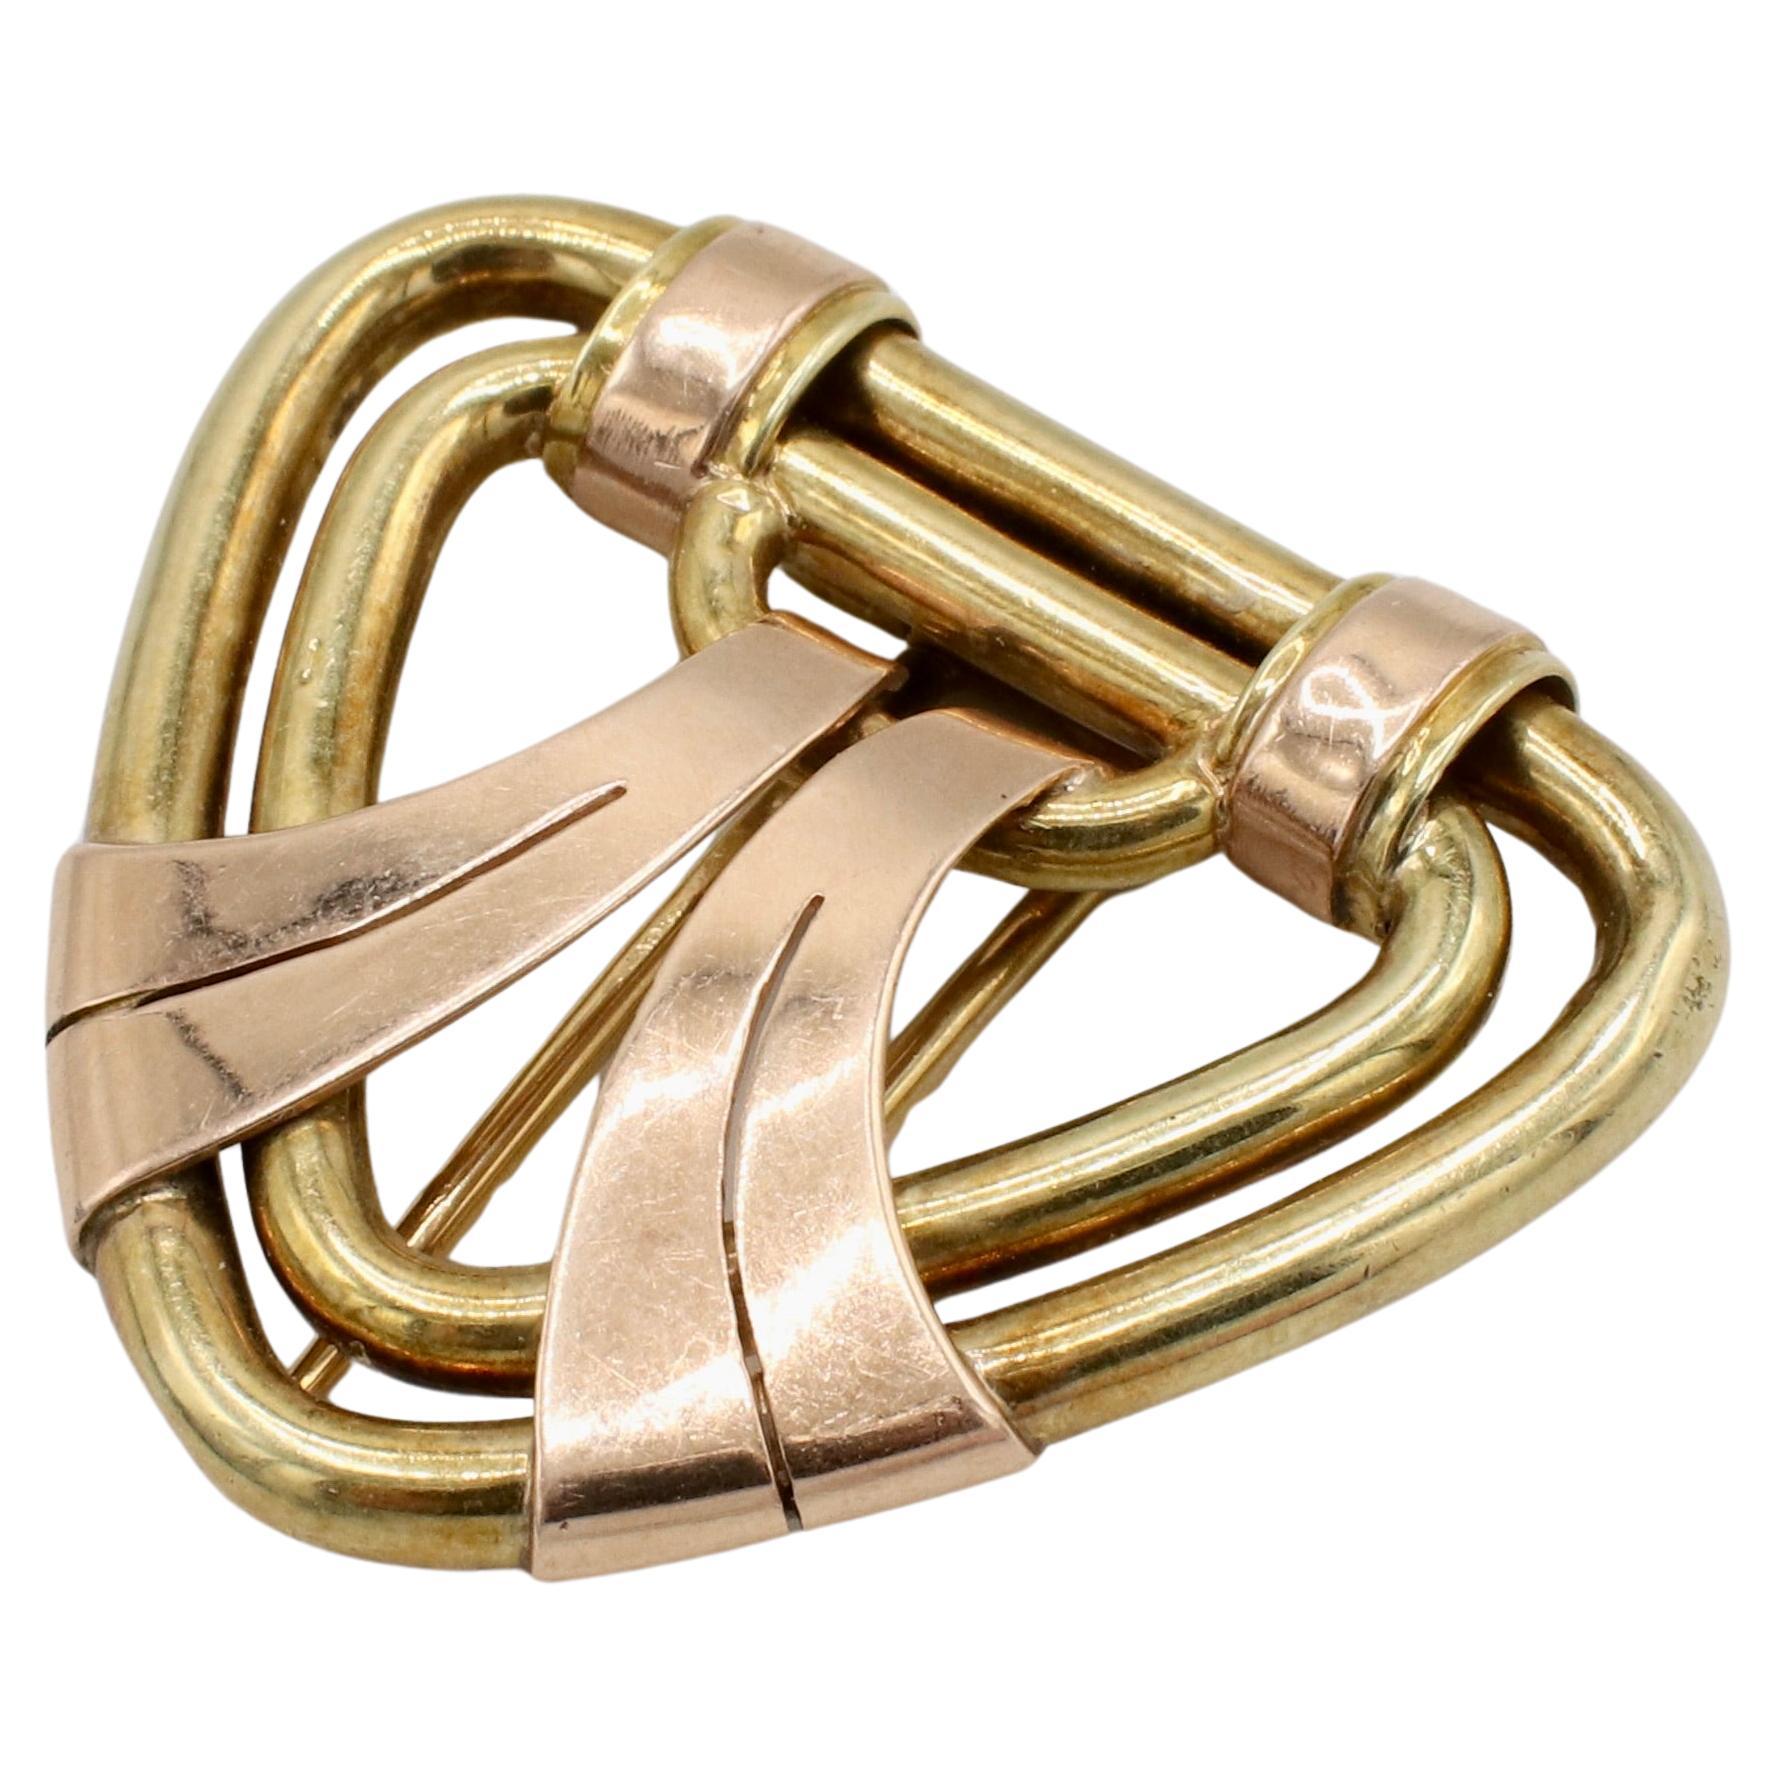 Tiffany & Co. Retro 14K Gelb und Rose Gold Clip Pin Brosche
Metall: 14k Gelb- und Roségold
Gewicht: 11,7 Gramm
Abmessungen: 37 x 33mm
Signiert: Tiffany & Co. 14k
